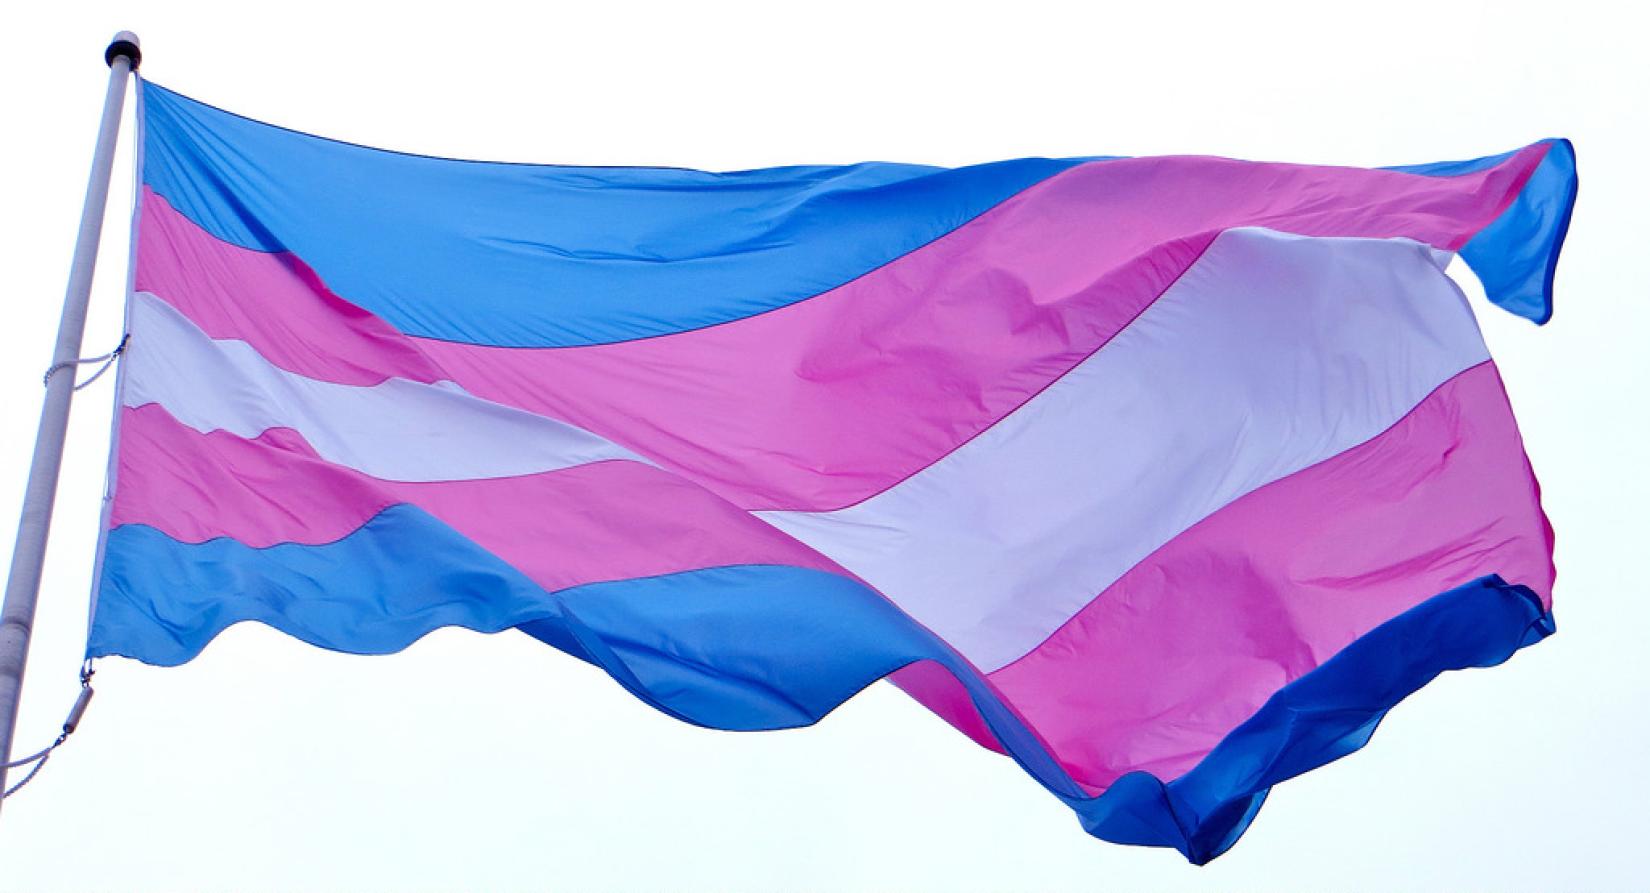 Bandeira do orgulho trans hasteada em São Francisco, nos Estados Unidos. Foto: Flickr (CC)/torbakhopper